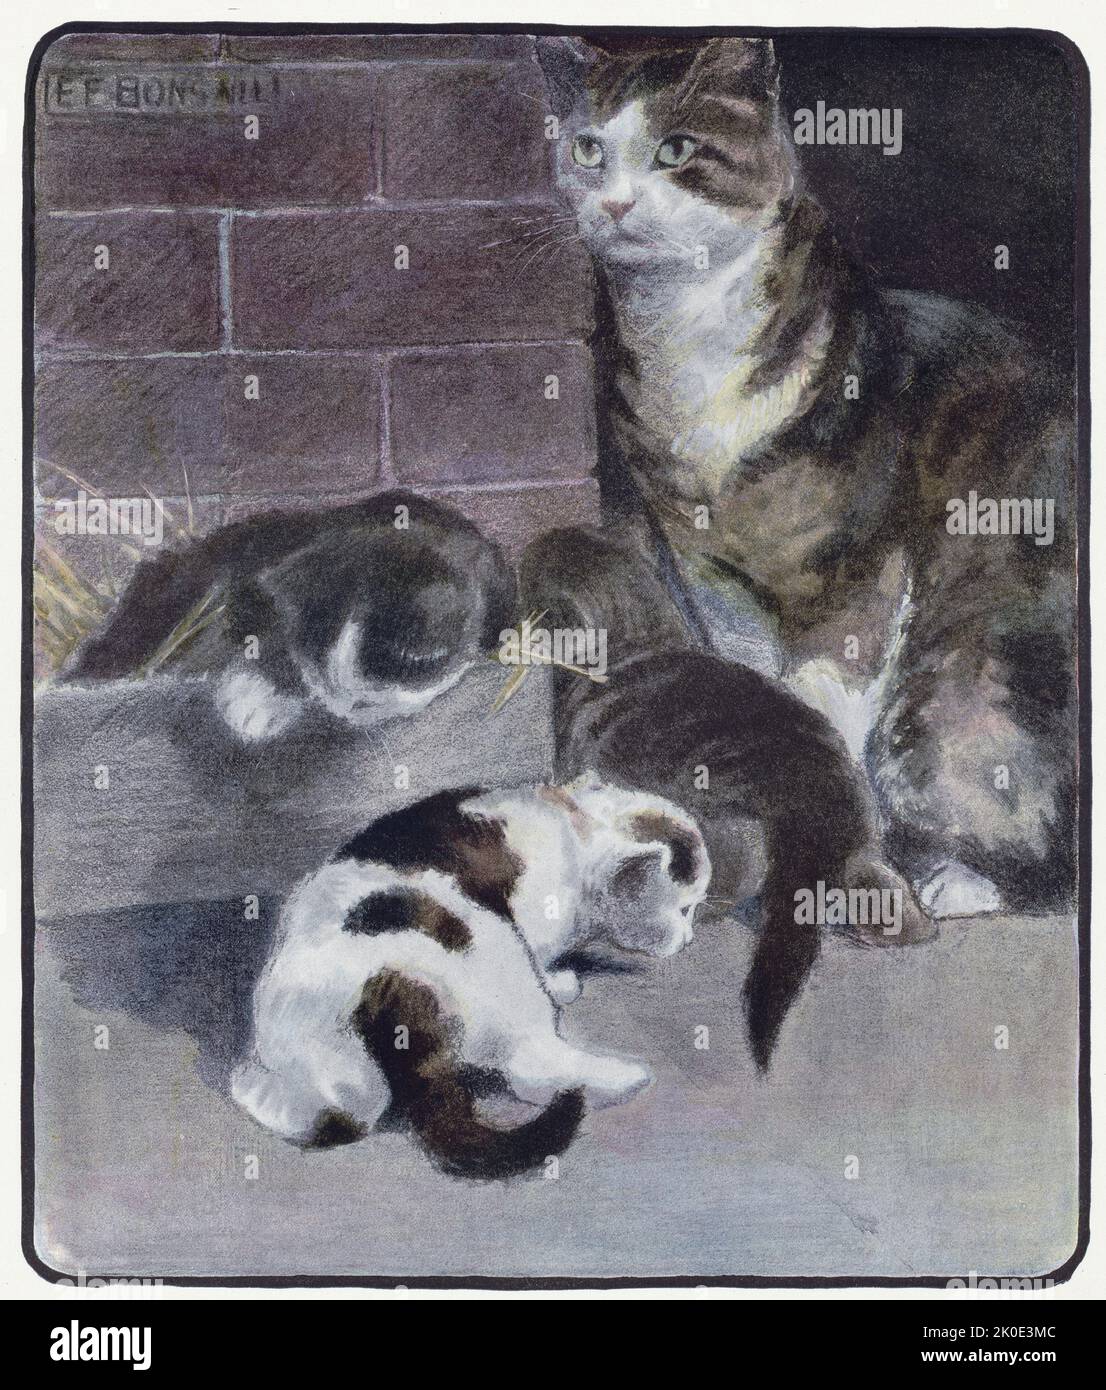 Das Buch der Katze mit Faksimiles von Zeichnungen in Farbe. Von Elisabeth Fearne Bonsall (12. September 1861 - 25. September 1956) war eine amerikanische Malerin und Illustratorin. Stockfoto